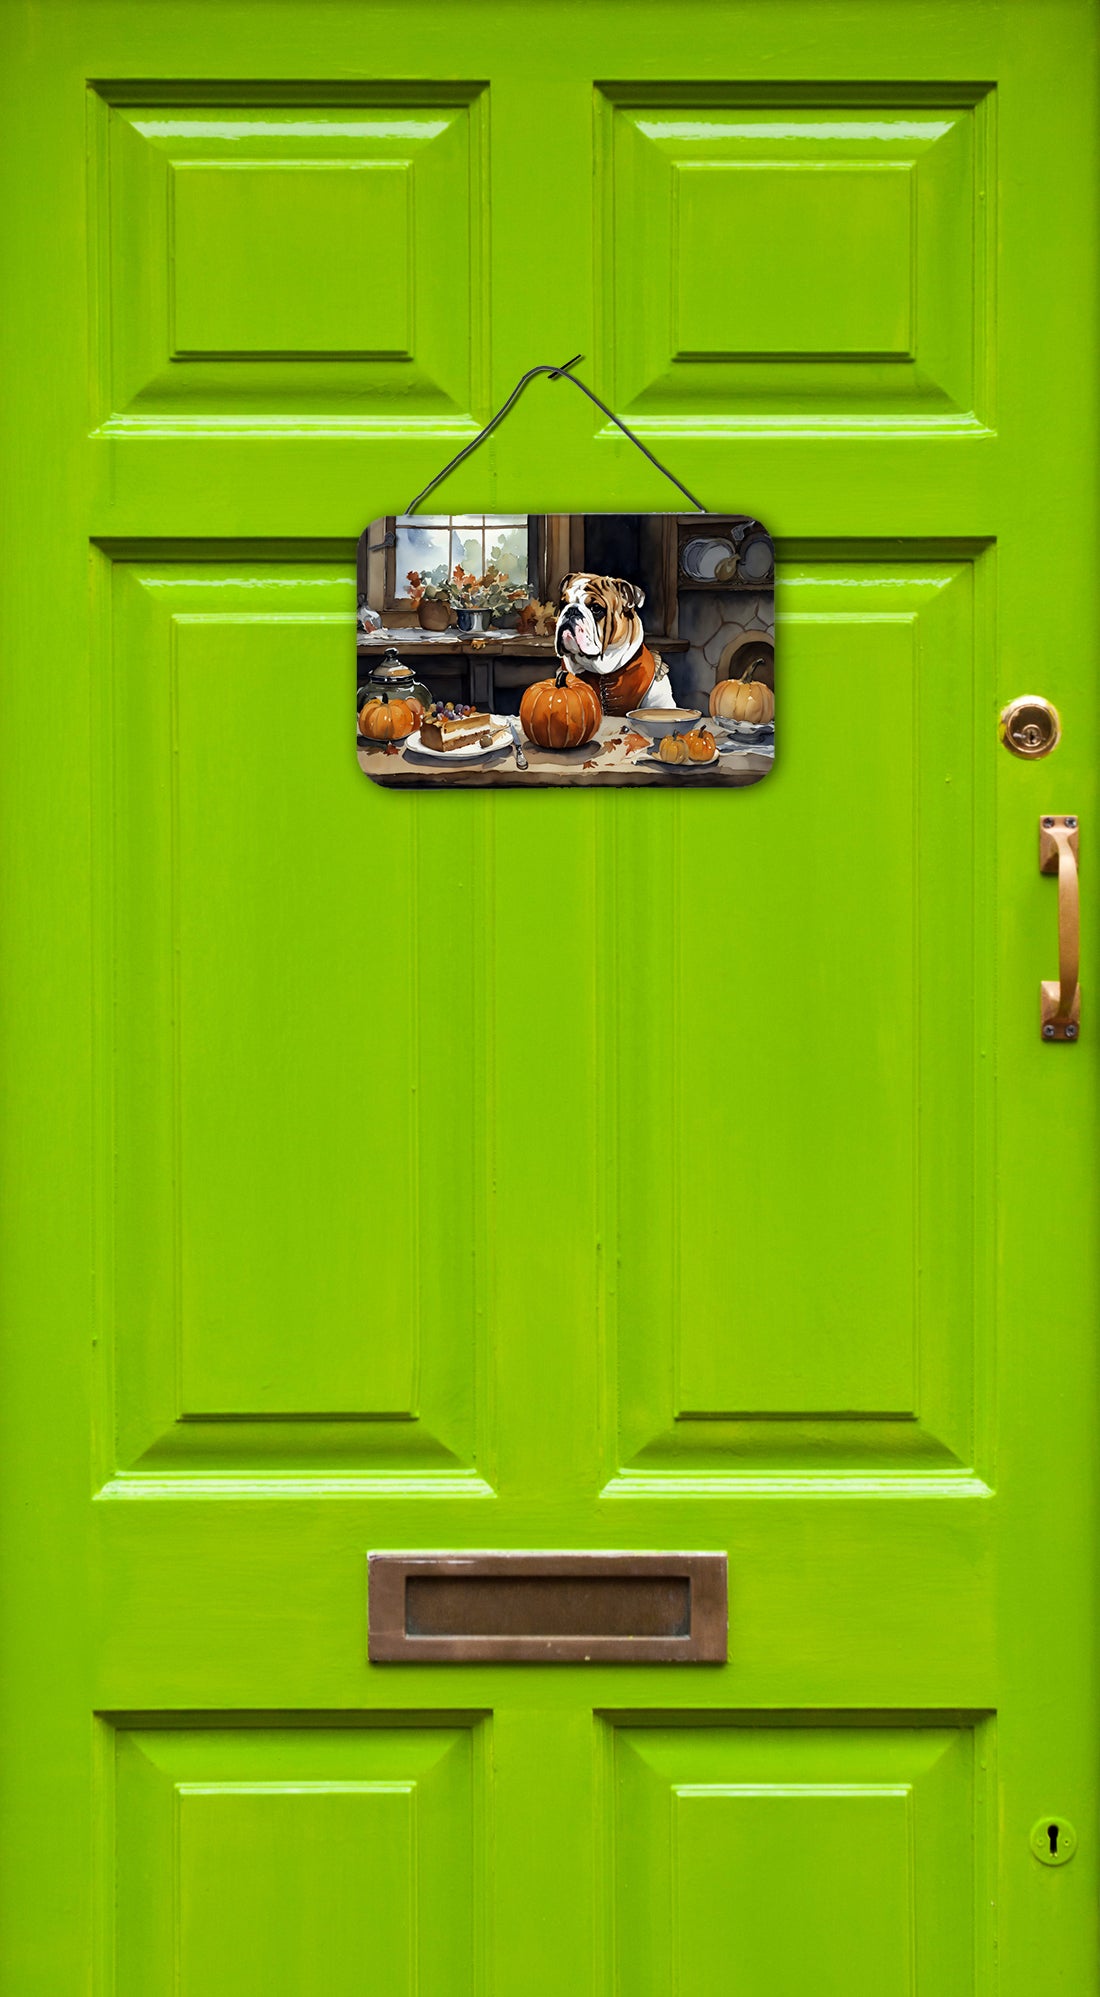 Buy this English Bulldog Fall Kitchen Pumpkins Wall or Door Hanging Prints